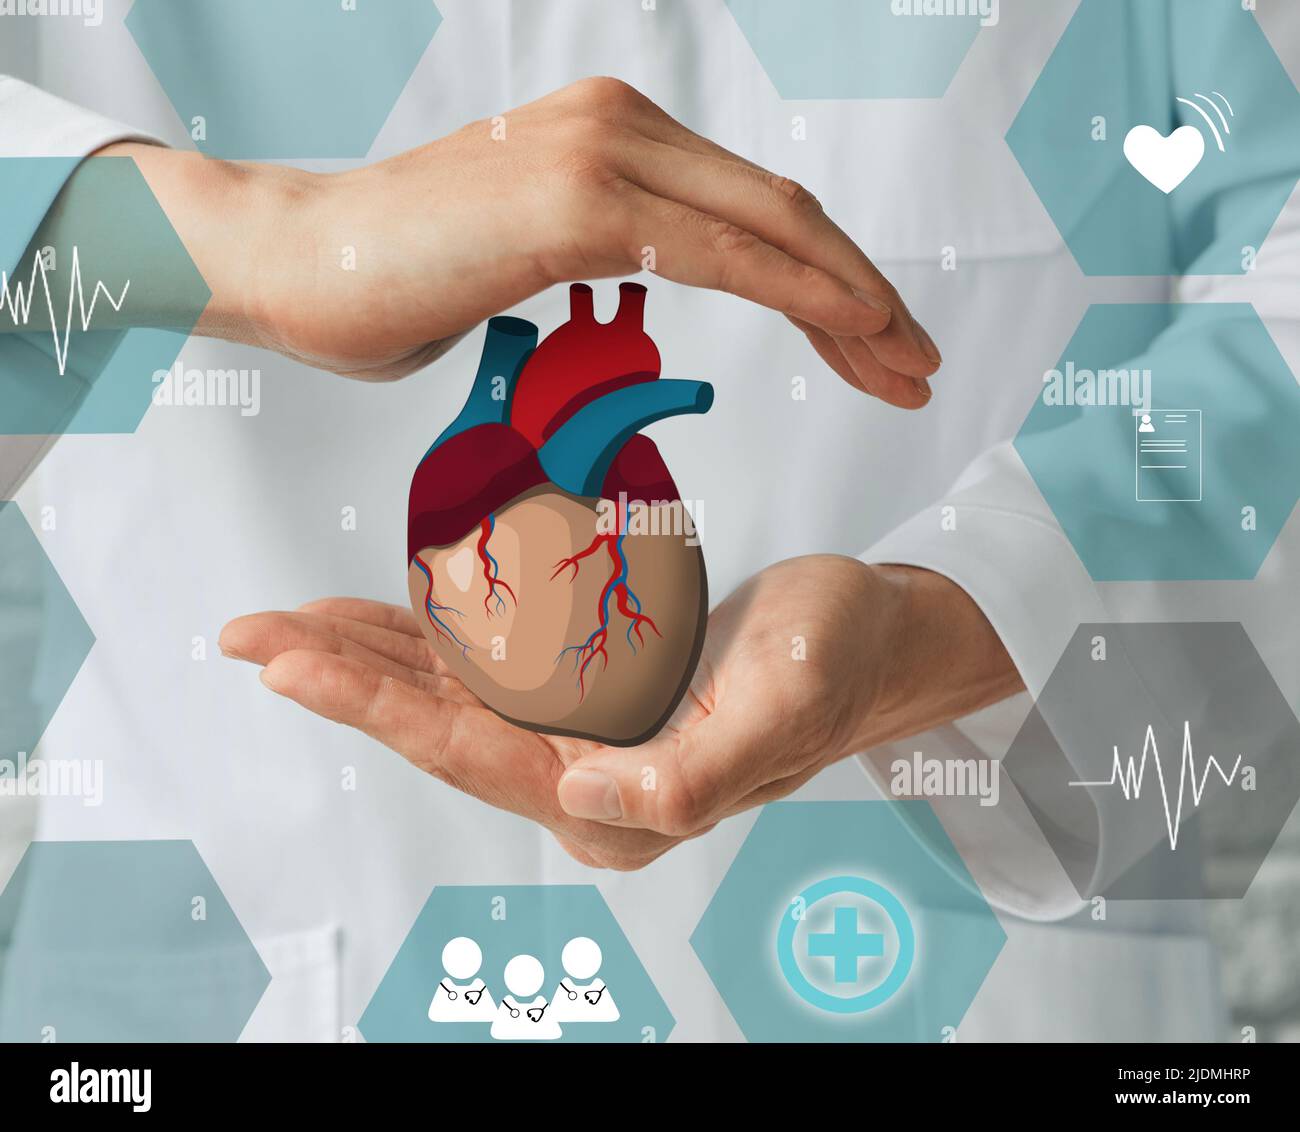 Apoyo médico a la salud cardiaca y cardiovascular humana por cardiología. Ayuda al corazón, concepto Foto de stock